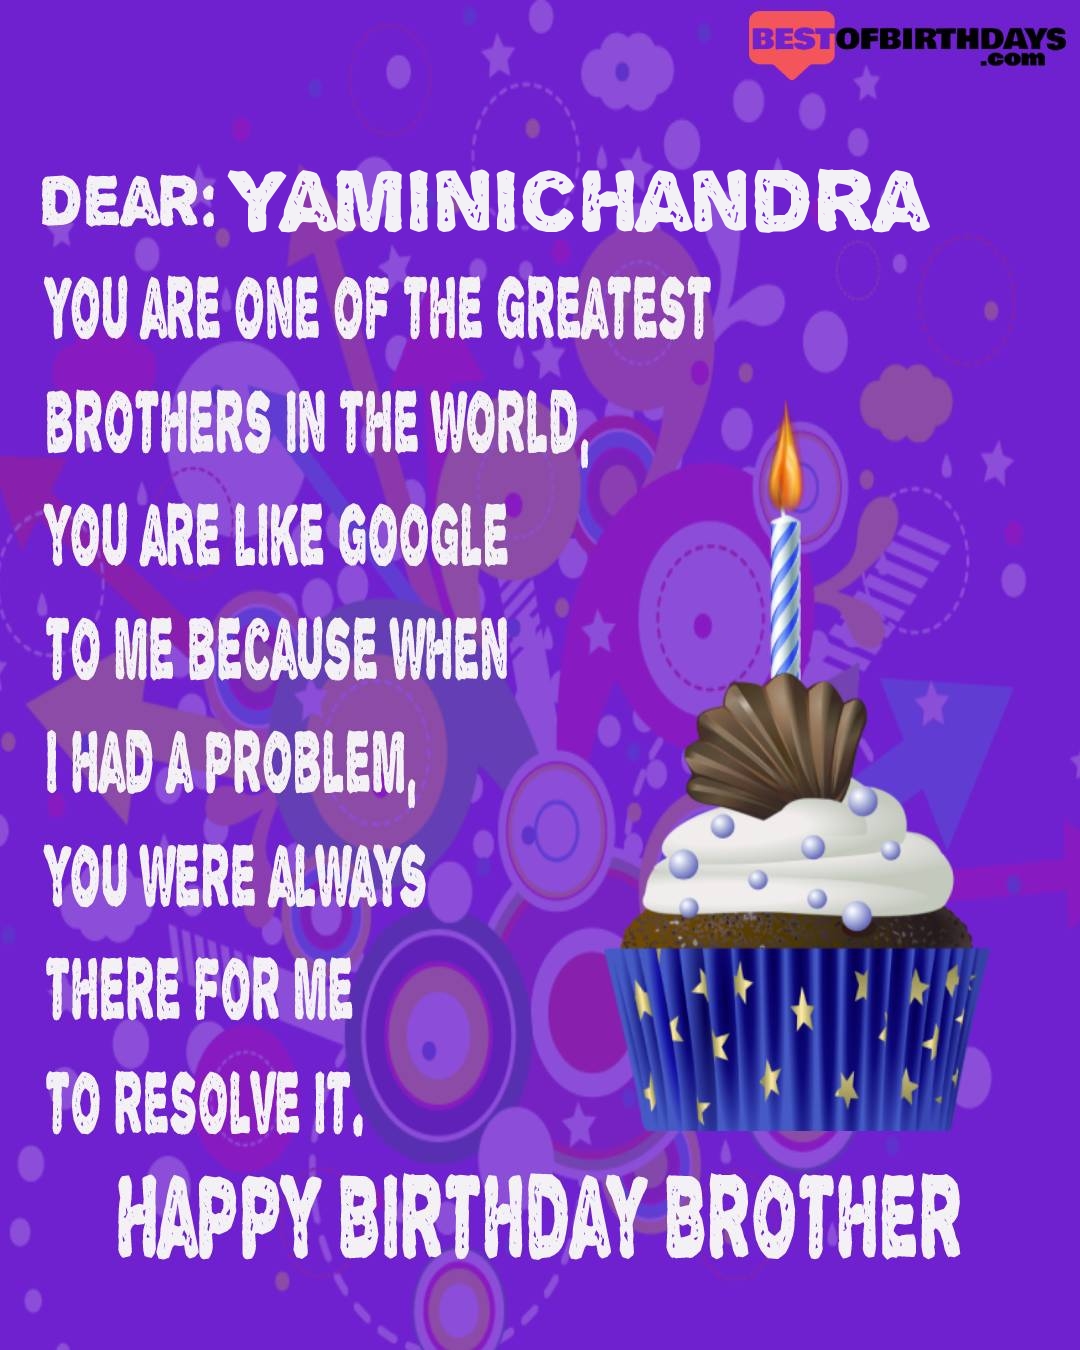 Happy birthday yaminichandra bhai brother bro